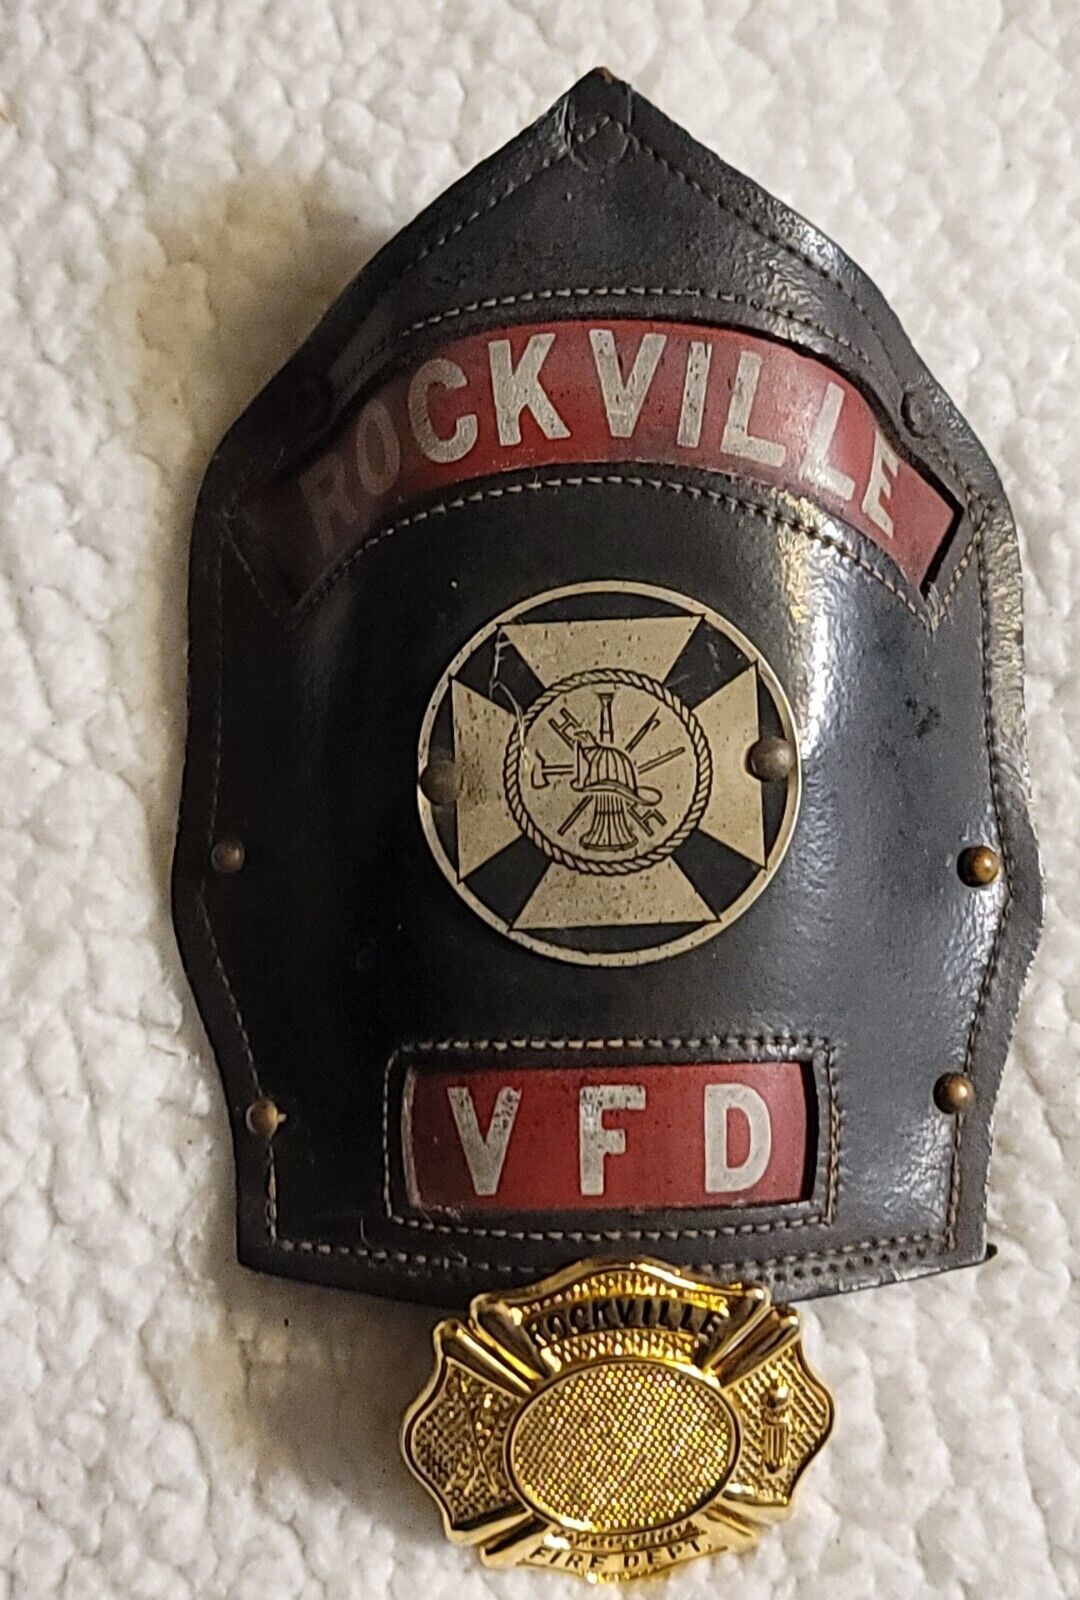 VINTAGE Rockville VFD CAIRNS BROS ?  FIREMAN Leather Shield 